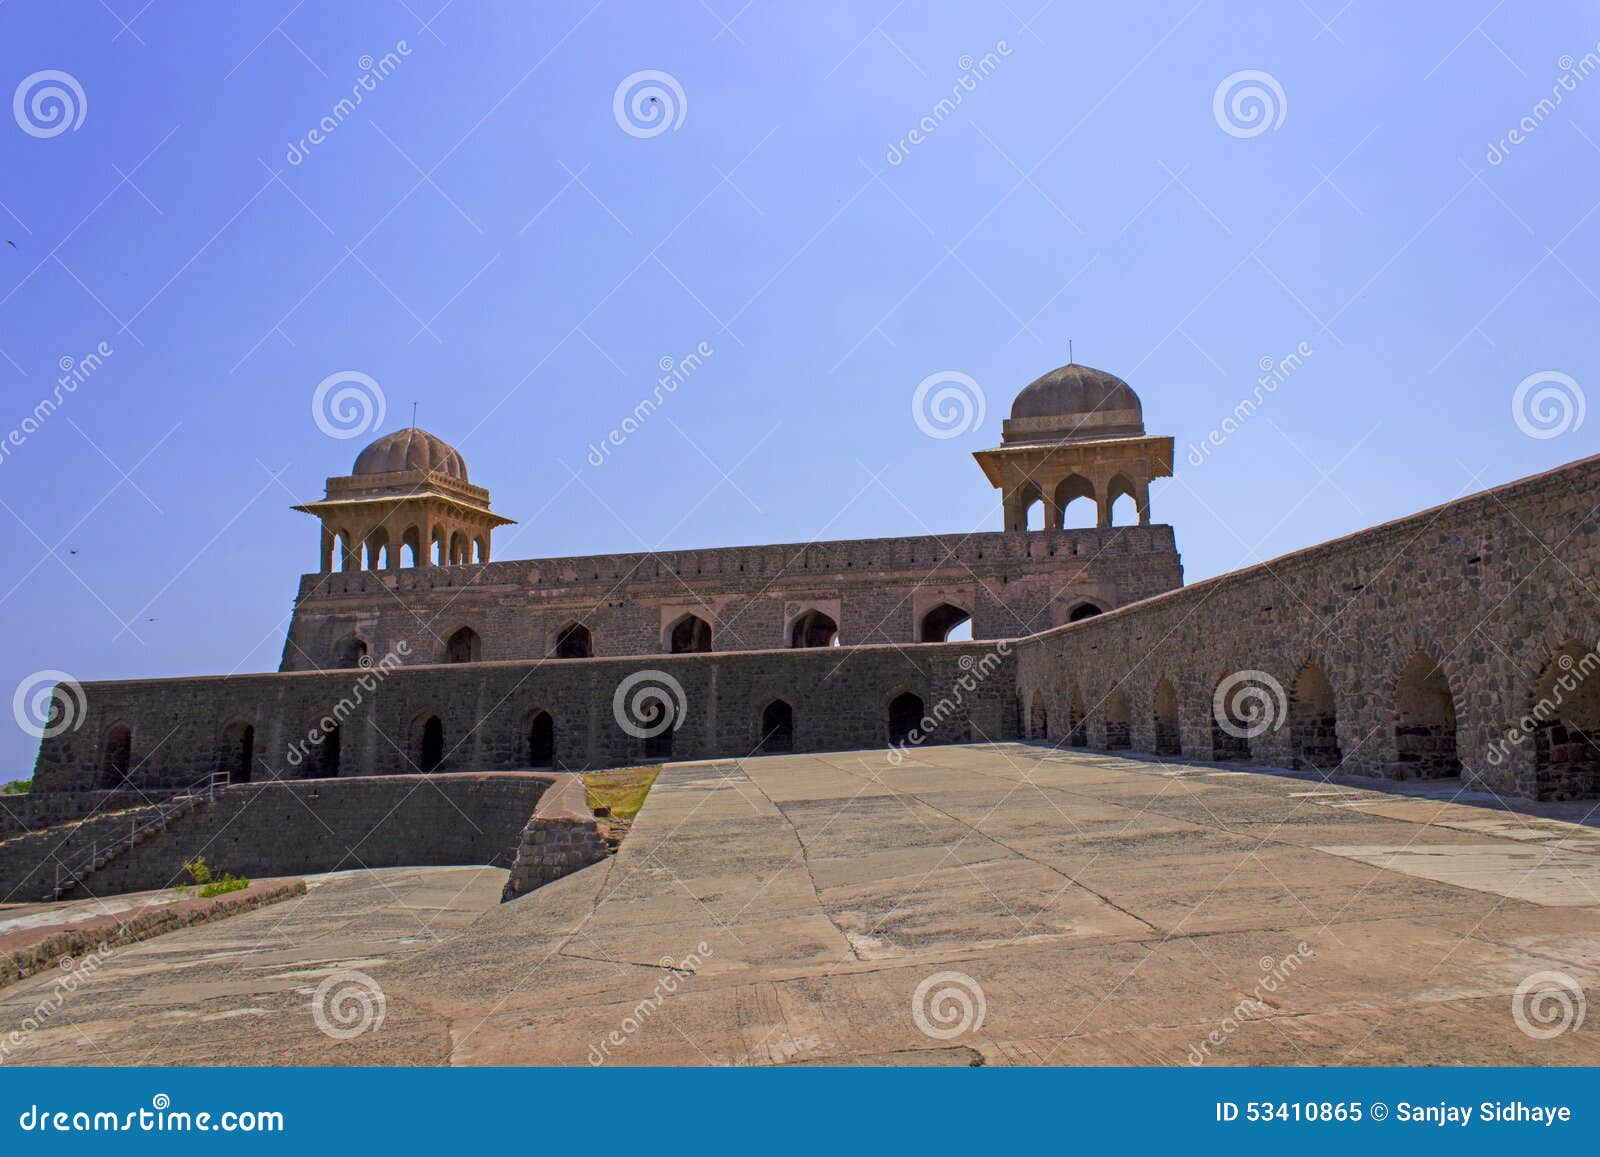 Rani Roopmati Palace. Oude Historische Indische Architectuur Historische Plaats, Mandu dichtbij indore, het paleis achterkant van ranienroopmati van het gebouw